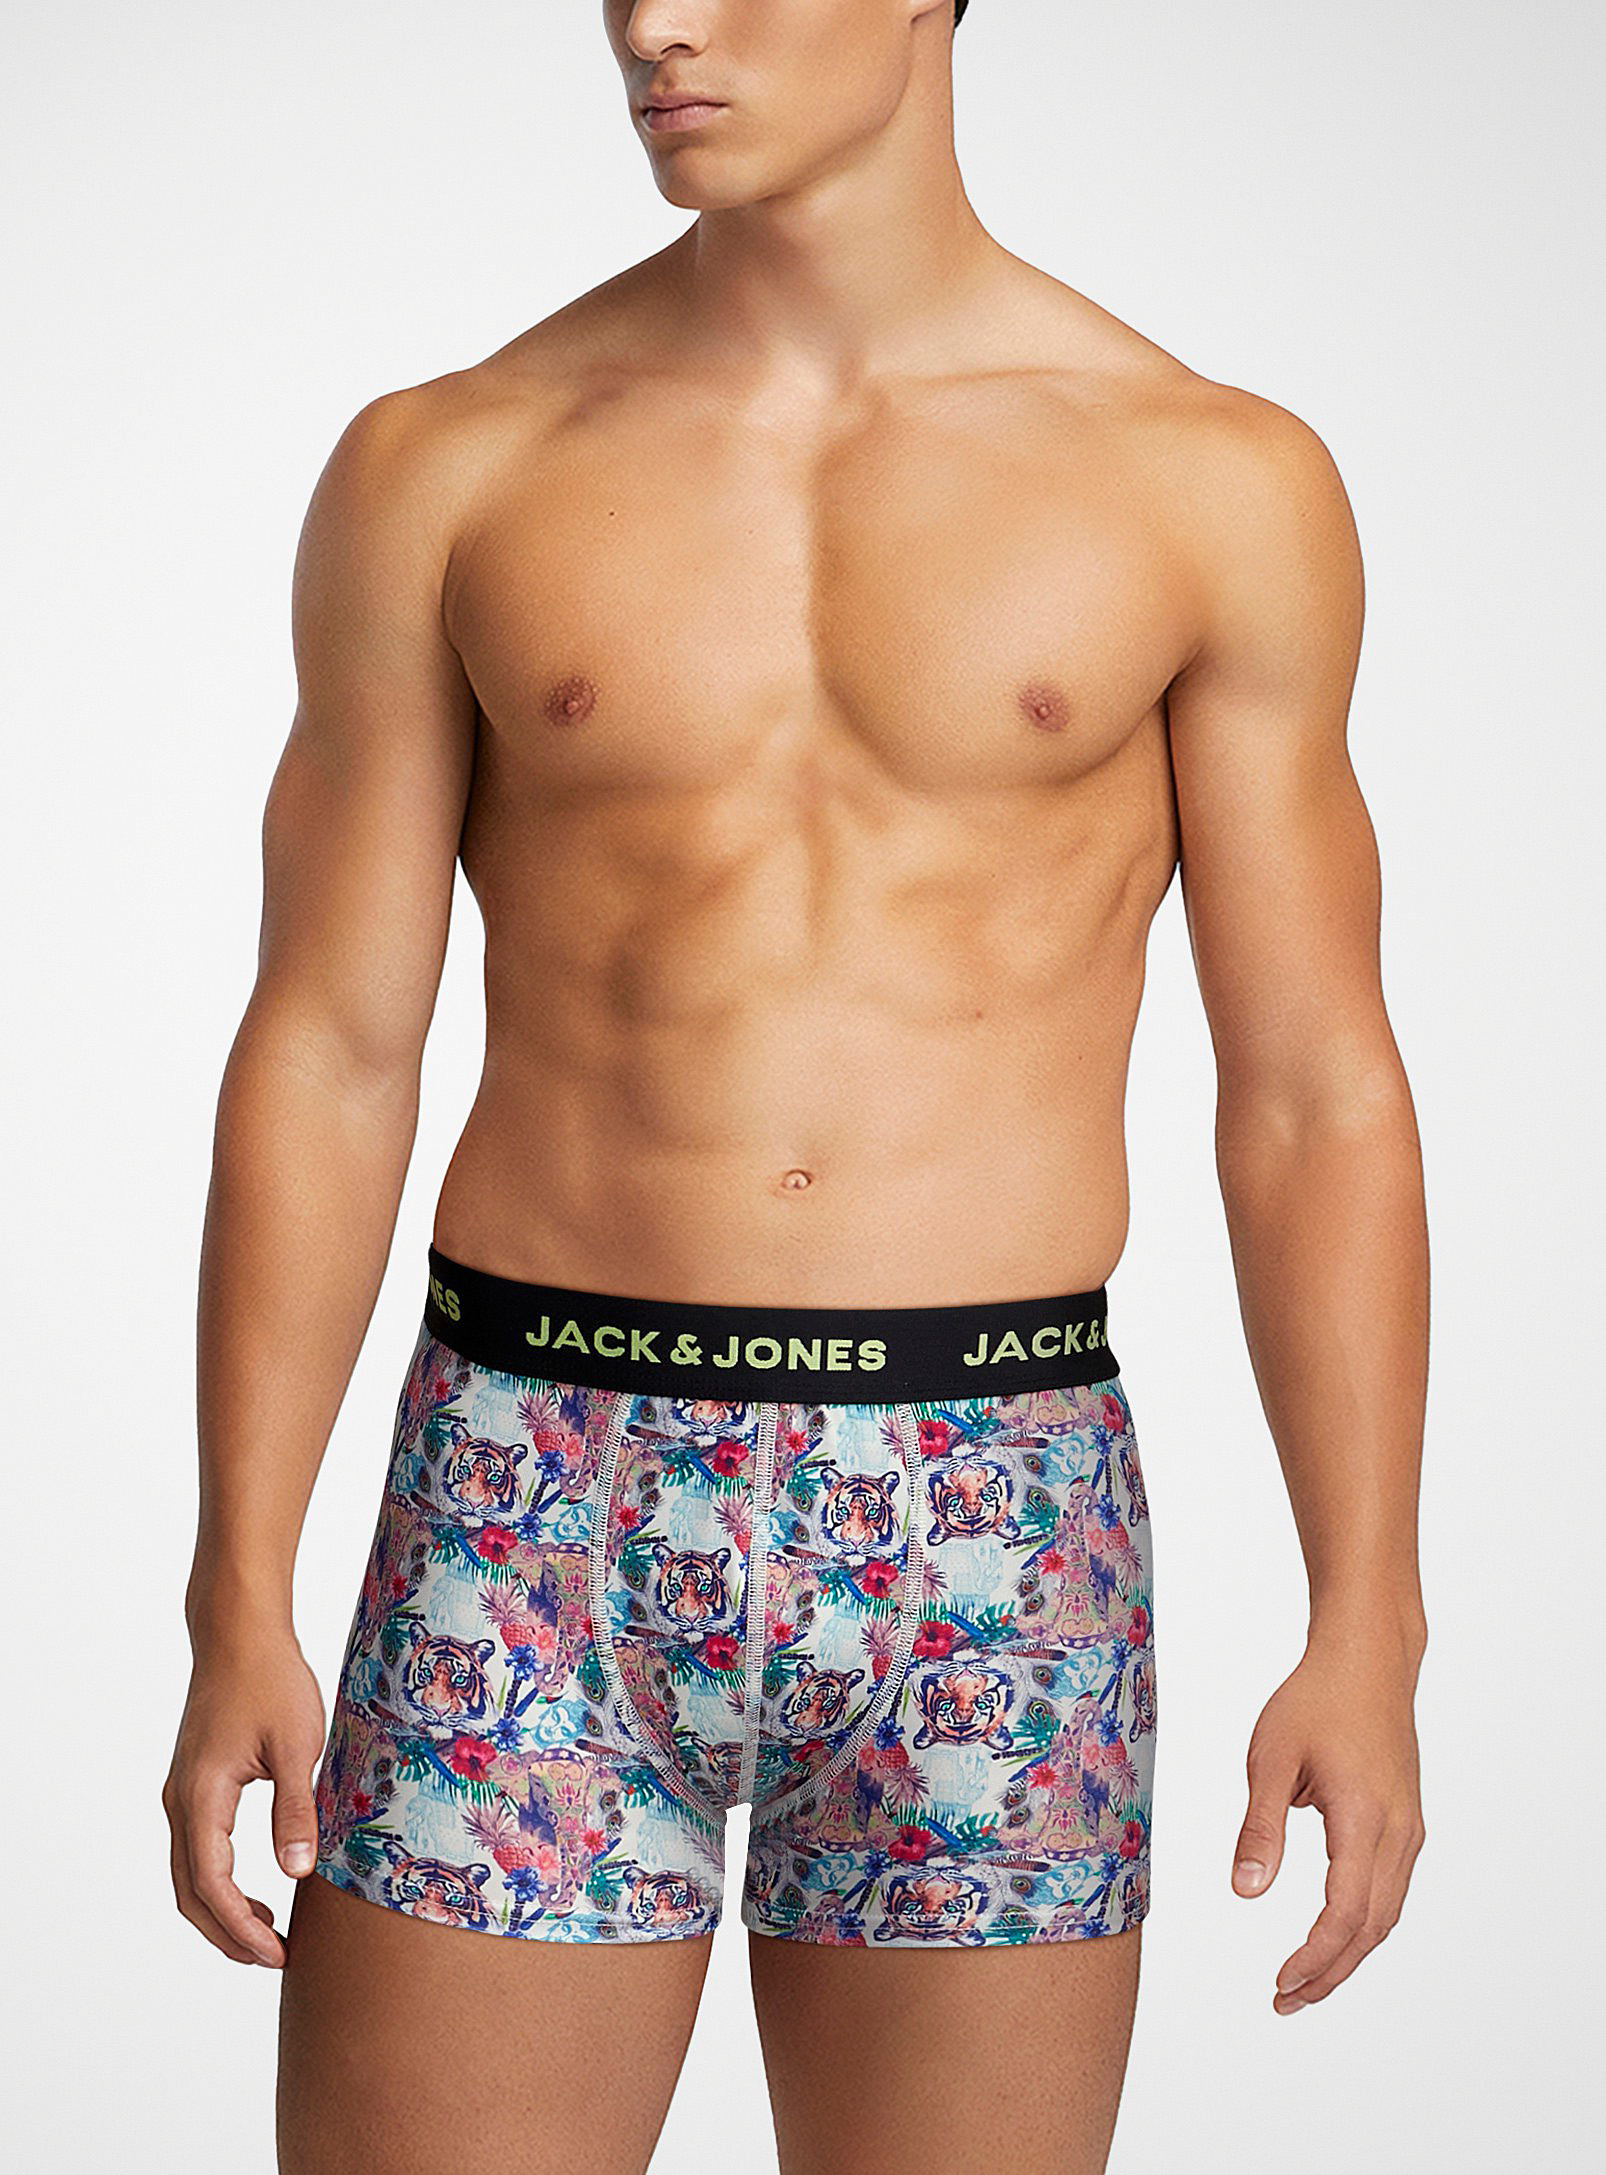 Jack & Jones - Men's Tiger trunk